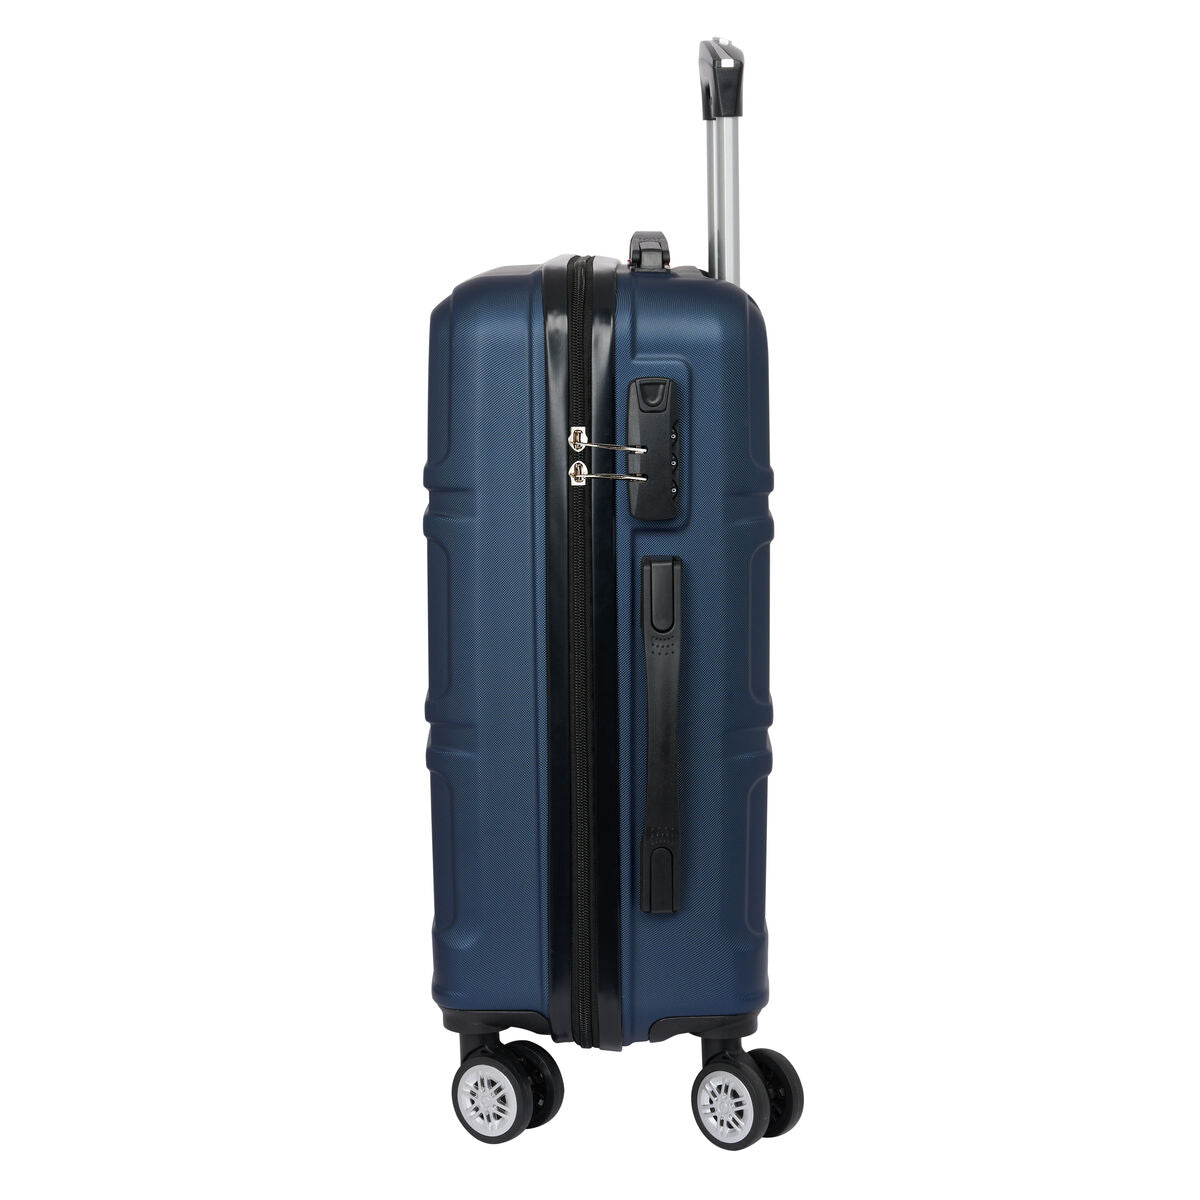 Kaufe Koffer für die Kabine Safta Marineblau 20'' 34,5 x 55 x 20 cm bei AWK Flagship um € 66.00